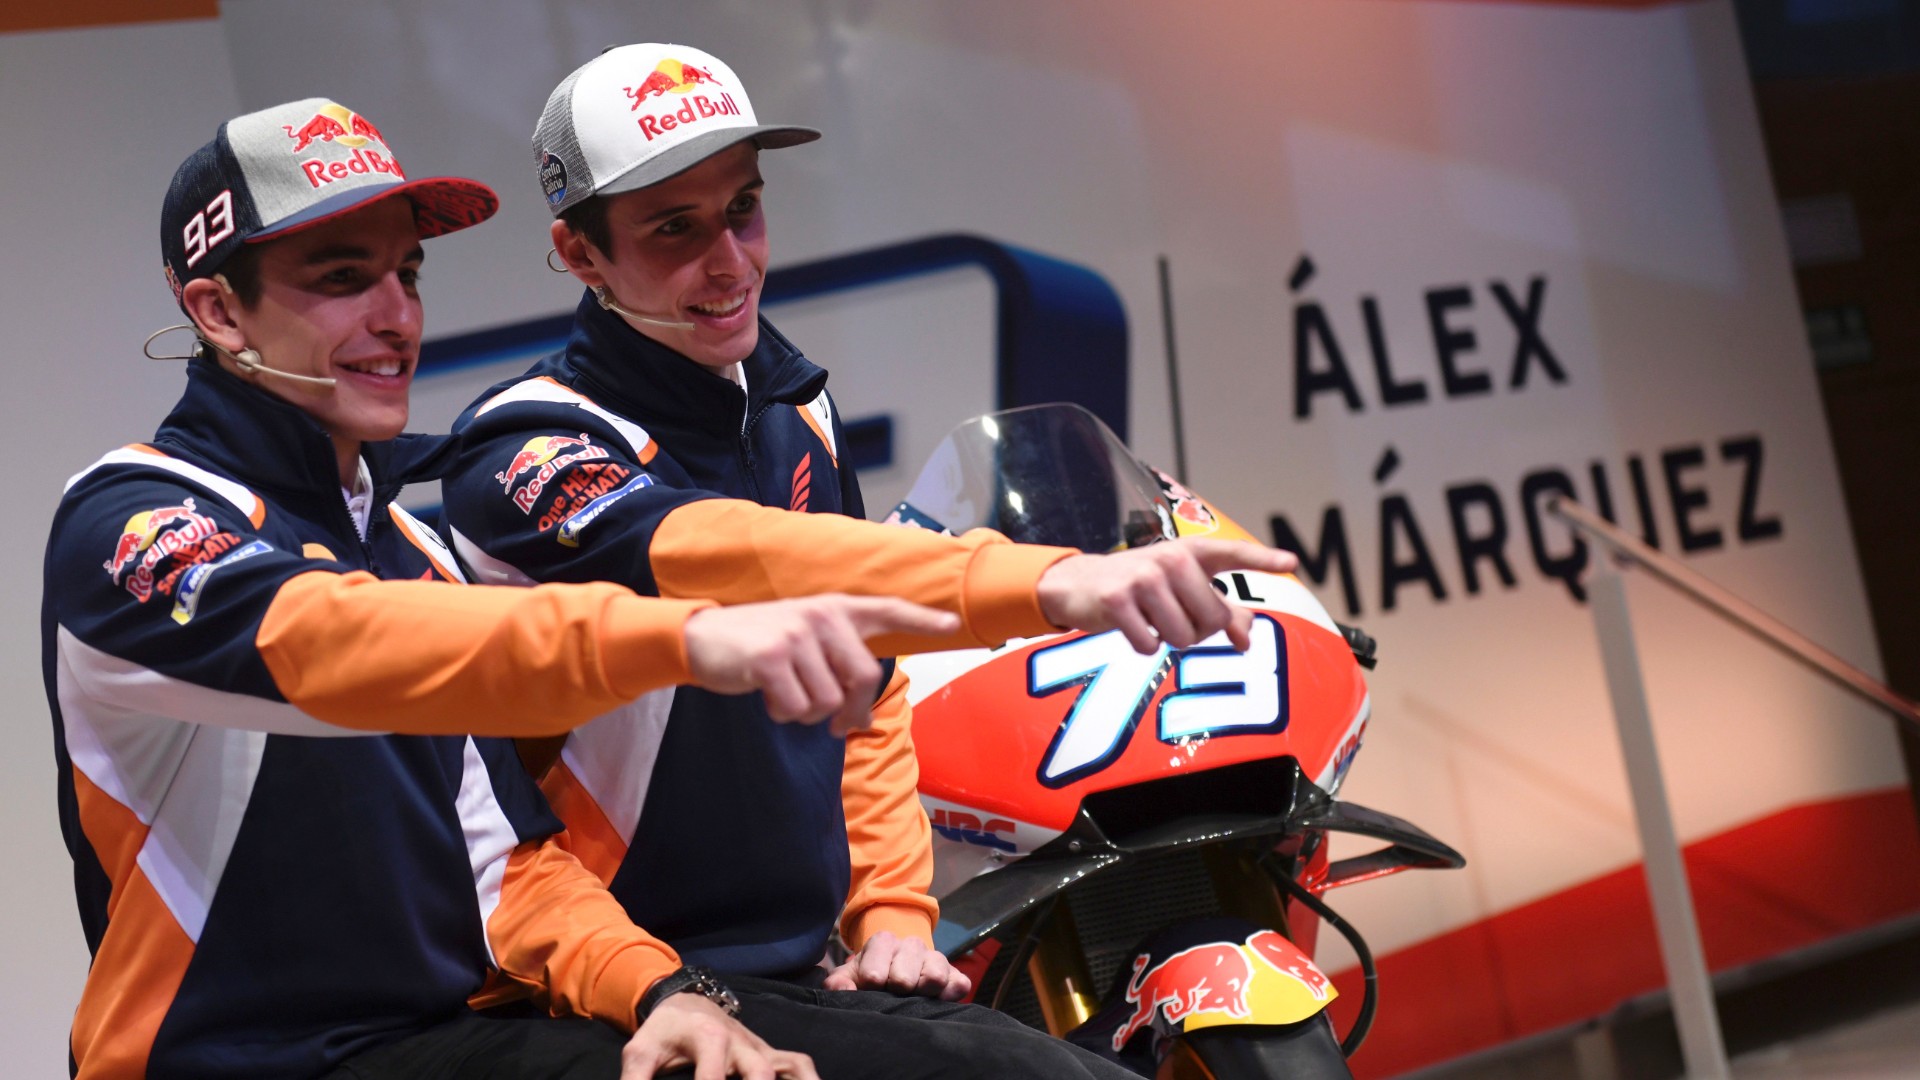 Ir al Video Pol Espargaró podría romper el 'Team Márquez' si ficha por Repsol-Honda